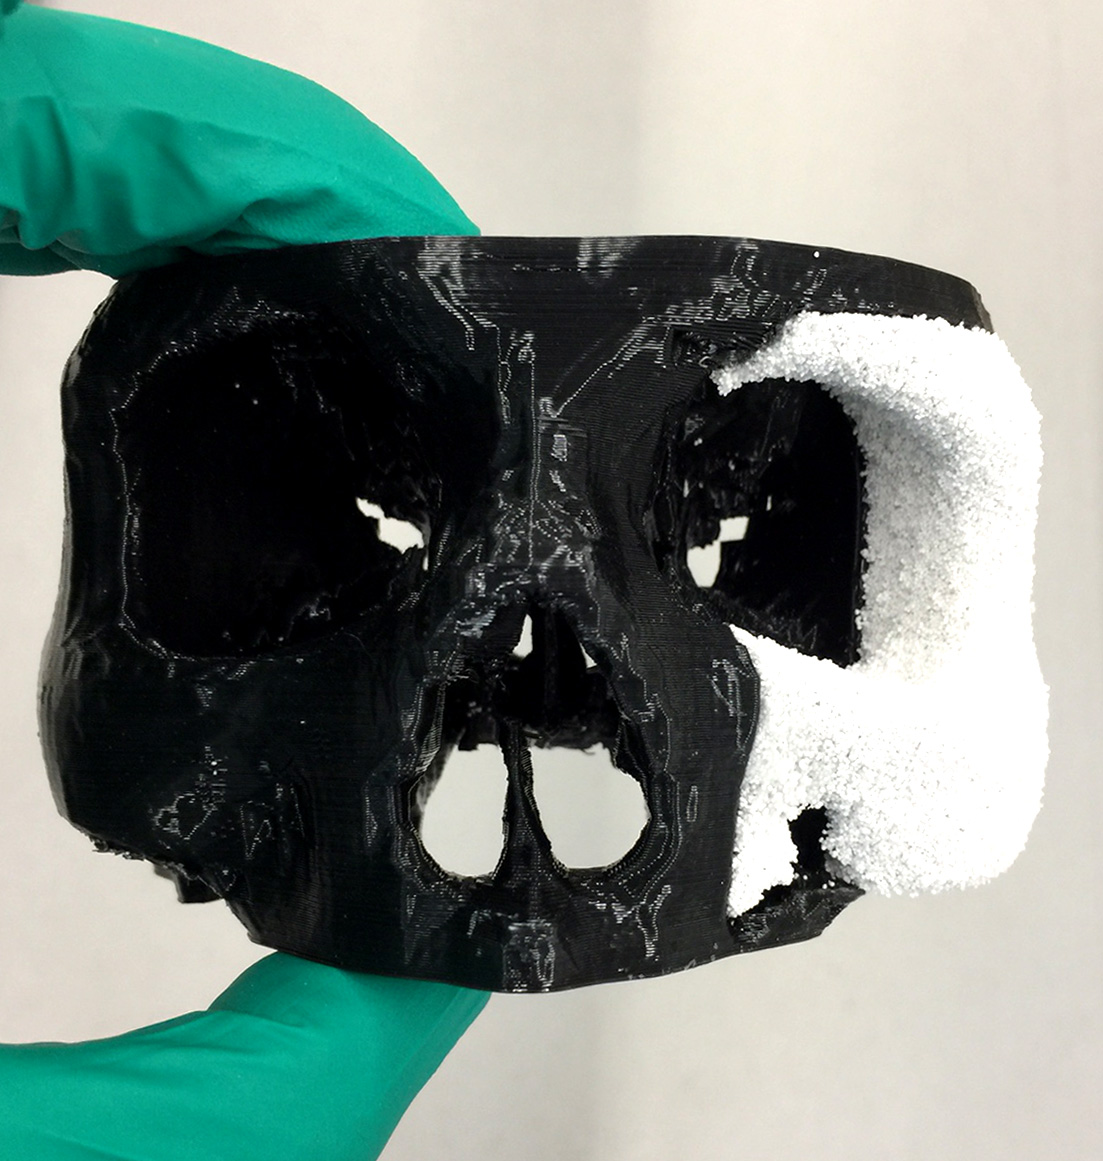 Phil: 3D gedrucktes Modellimplantat eines Jochbeins in weiss. Modell des Schädels in schwarz wurde mit der FDM-Technologie gedruckt.